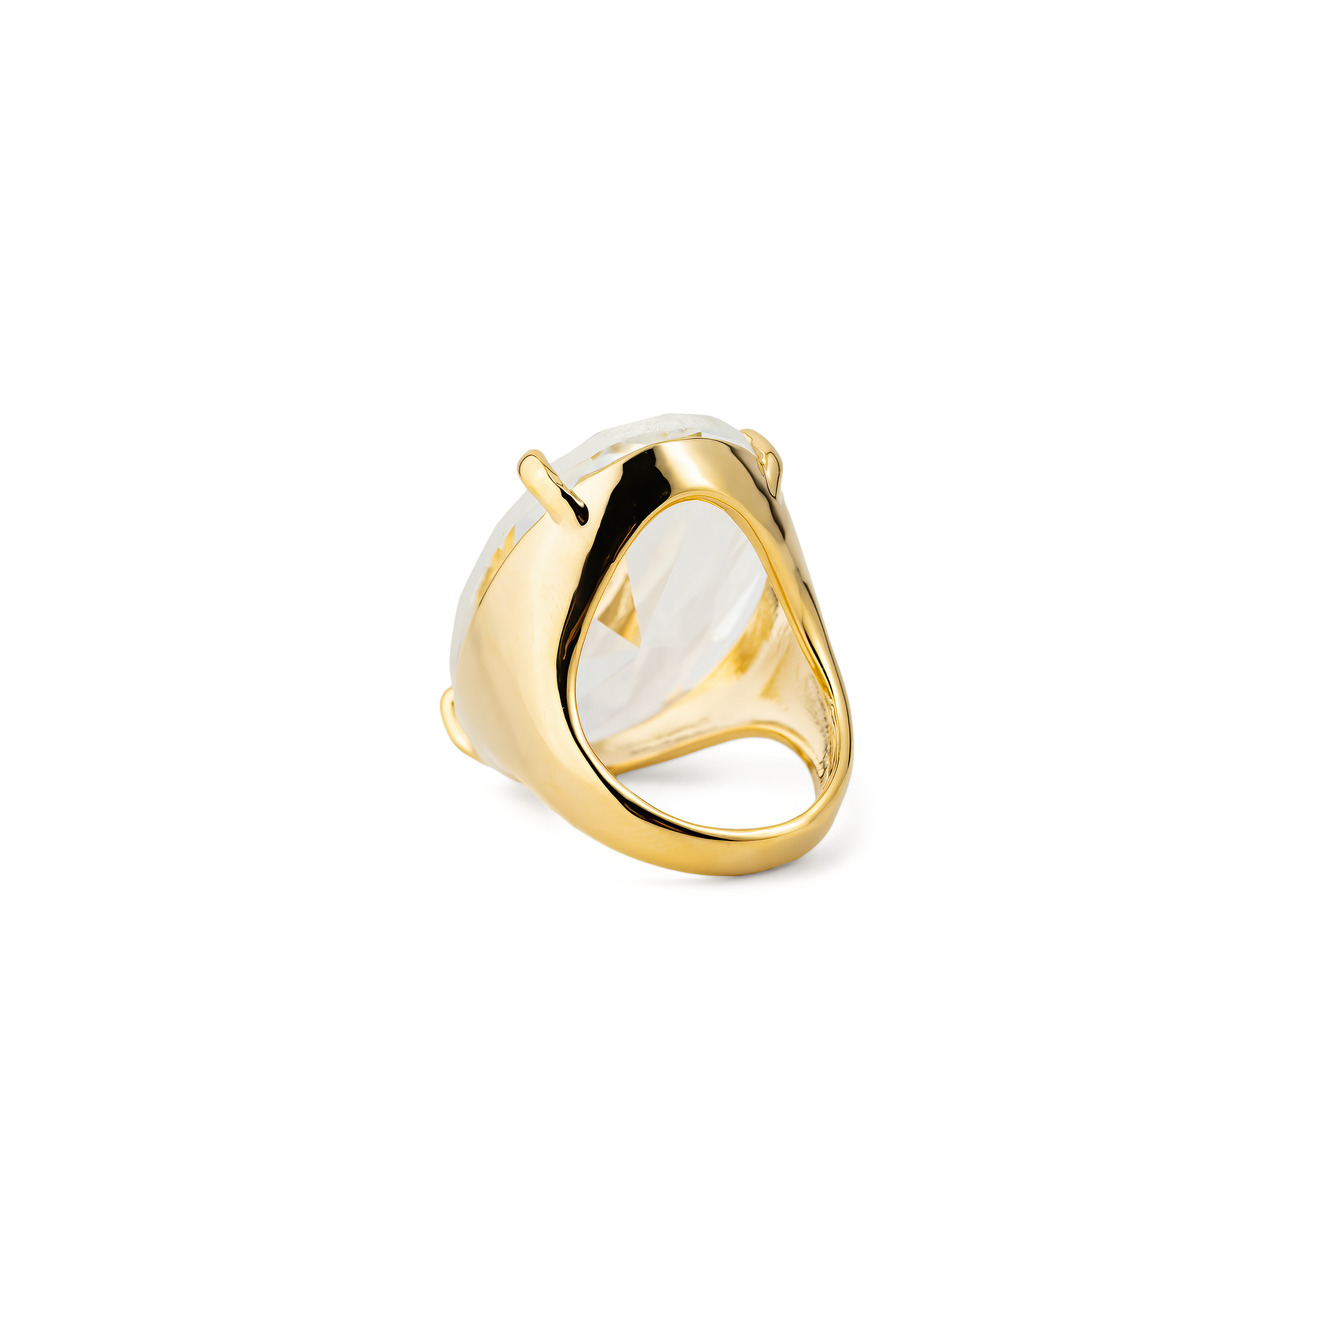 Herald Percy Золотистое кольцо с овальным кристаллом herald percy золотистое фигурное кольцо с зеленым сердцем